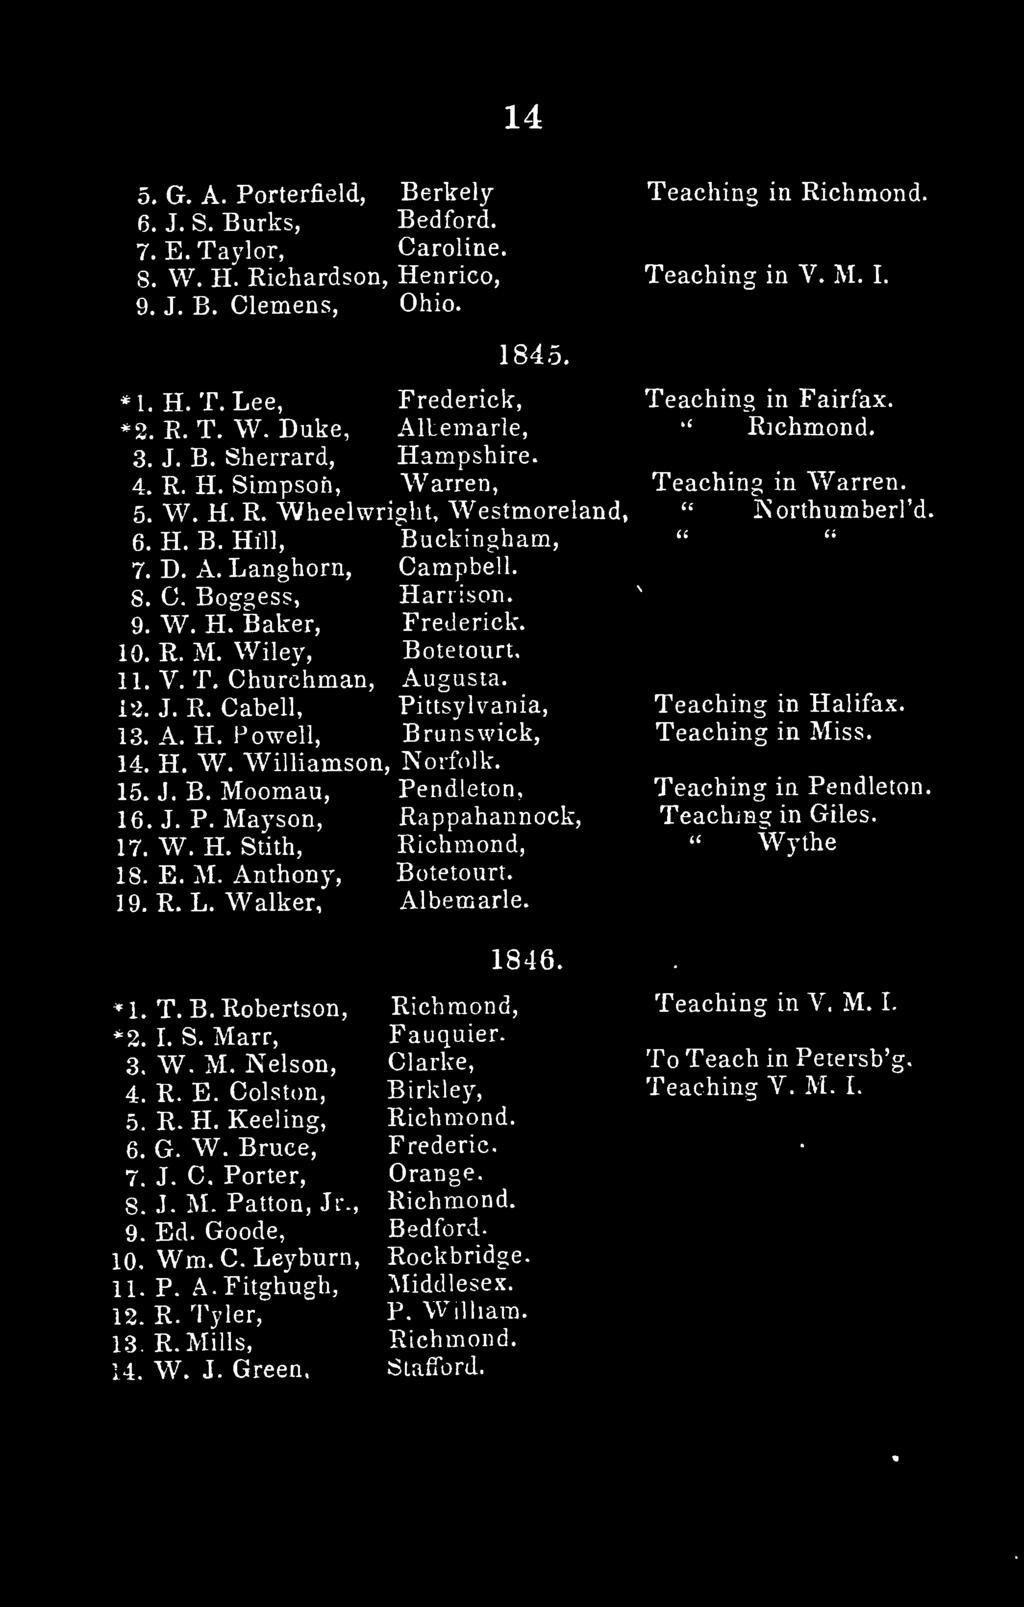 Teaching in Halifax. Teaching in Miss. Teaching in Pendleton. Teaching in Giles. " Wythe *1. T.B.Robertson, *2. I. S. Marr, 3. W. M. Nelson, 4. R. E. Colston, 5. R. H. Keeling, 6. G. W. Bruce, 7. J.